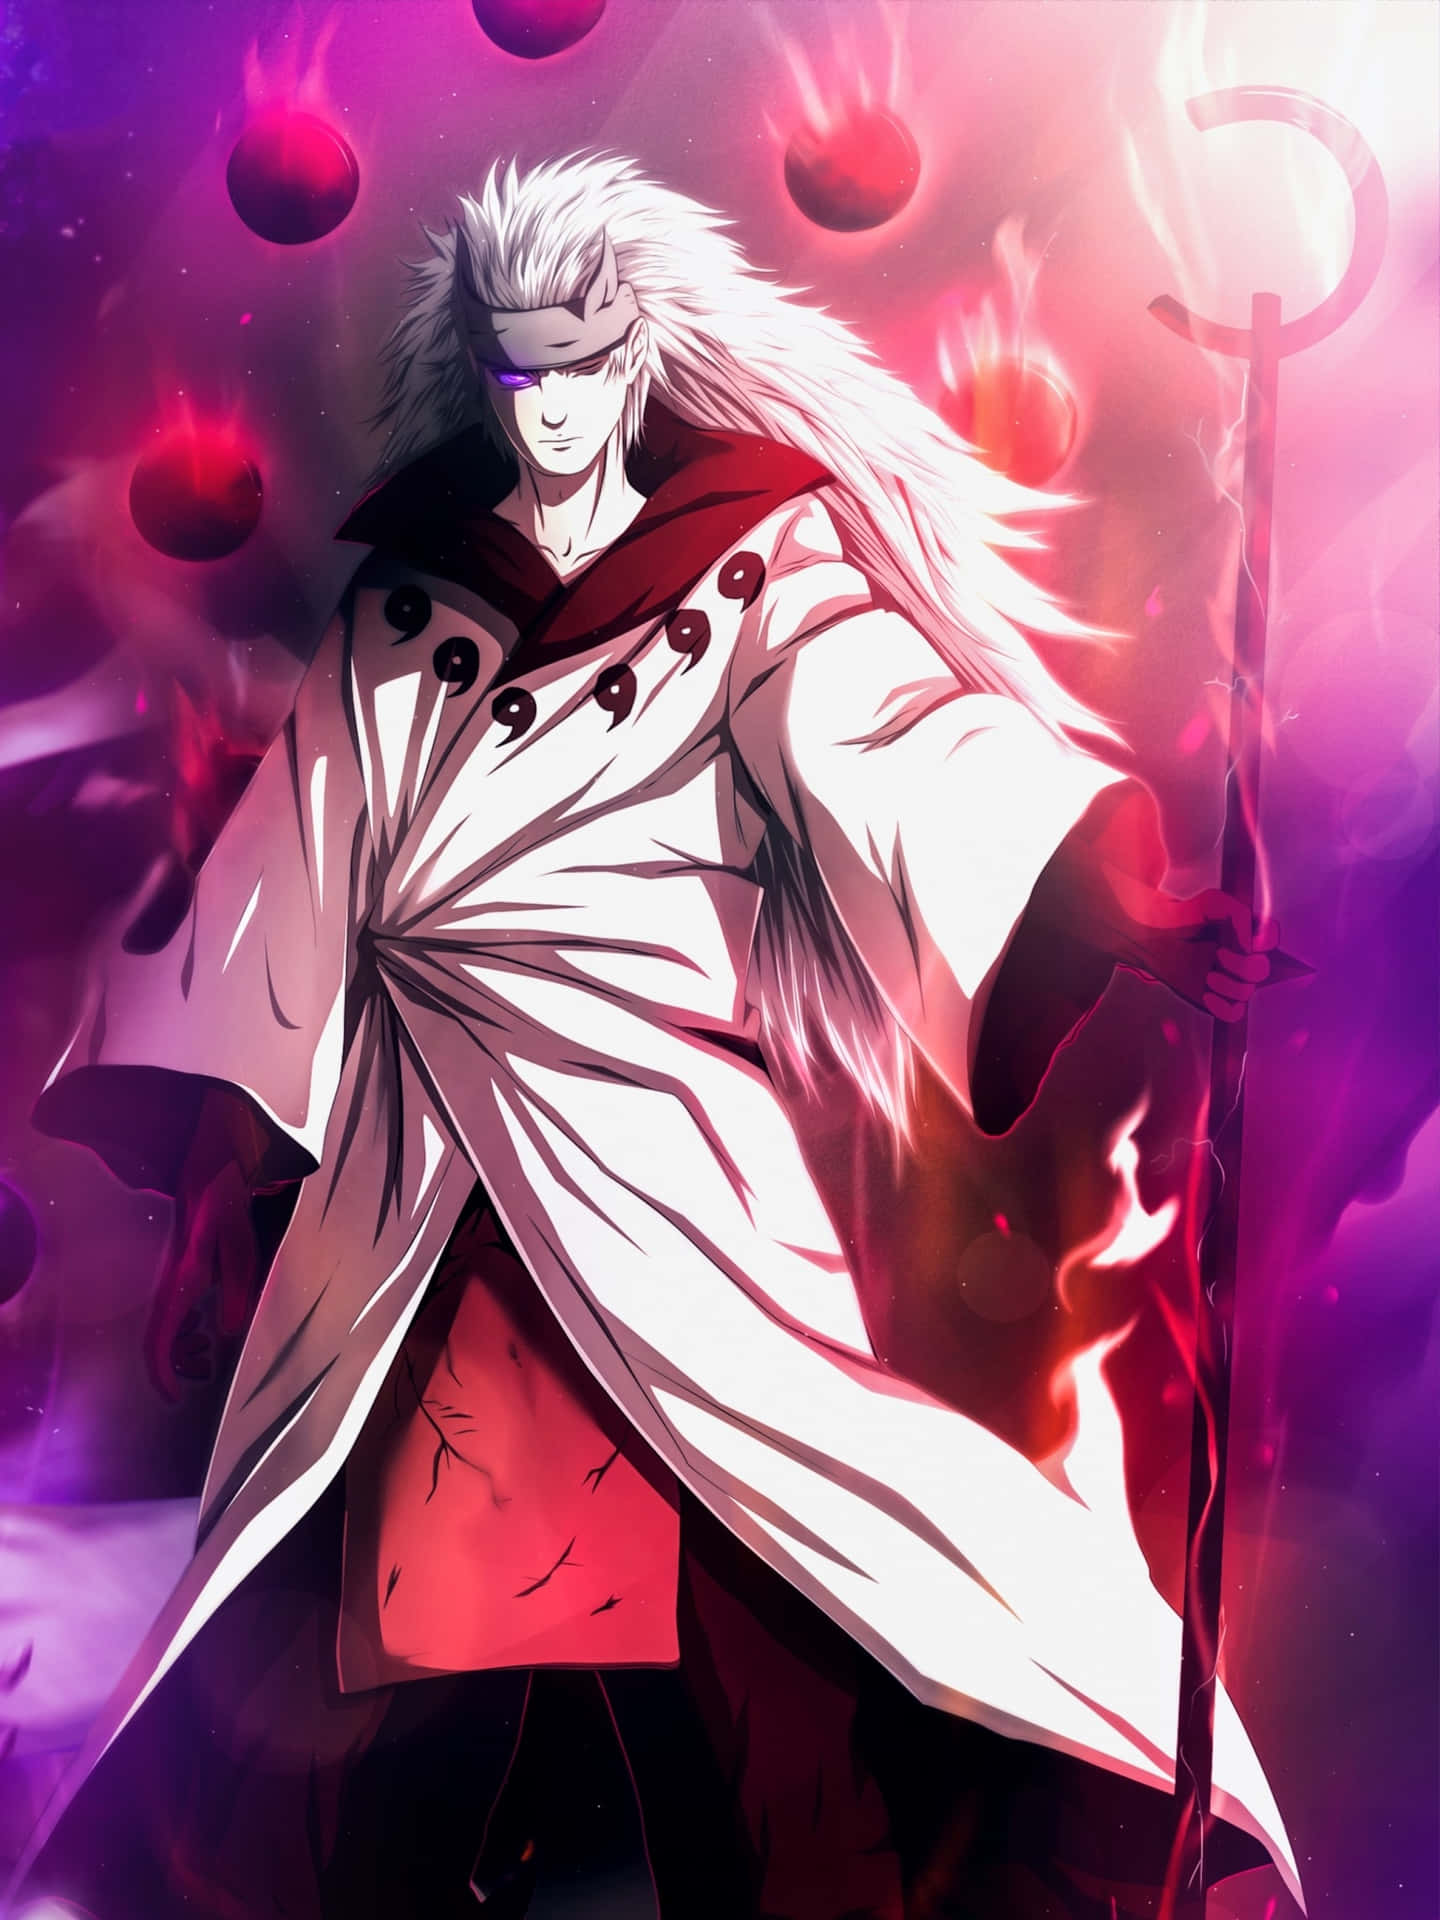 Madarauchiha, En Mäktig Ninja Från Naruto-serien. Wallpaper